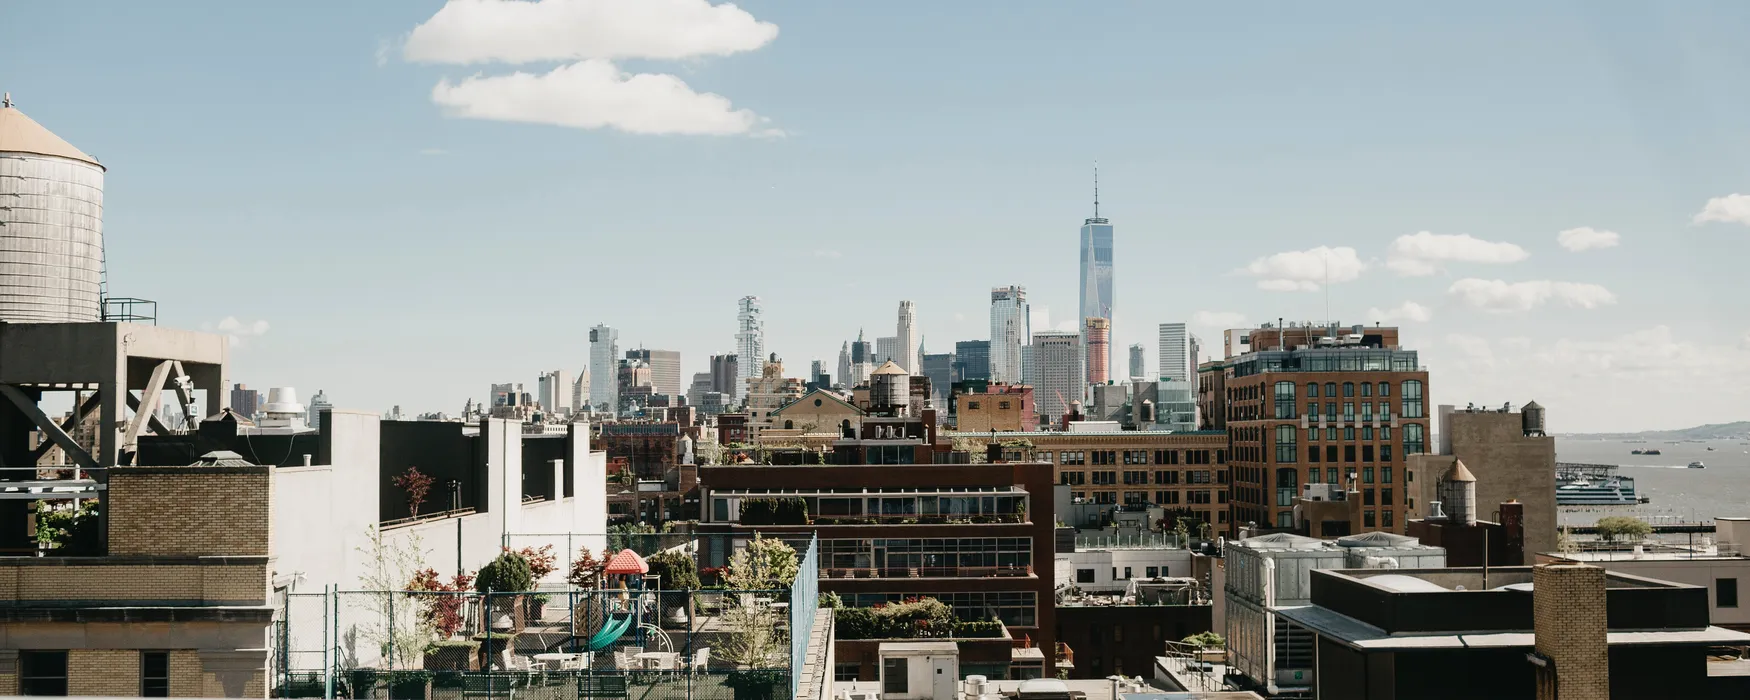 3 najlepsze bary na dachu i tarasy widokowe w Nowym Jorku